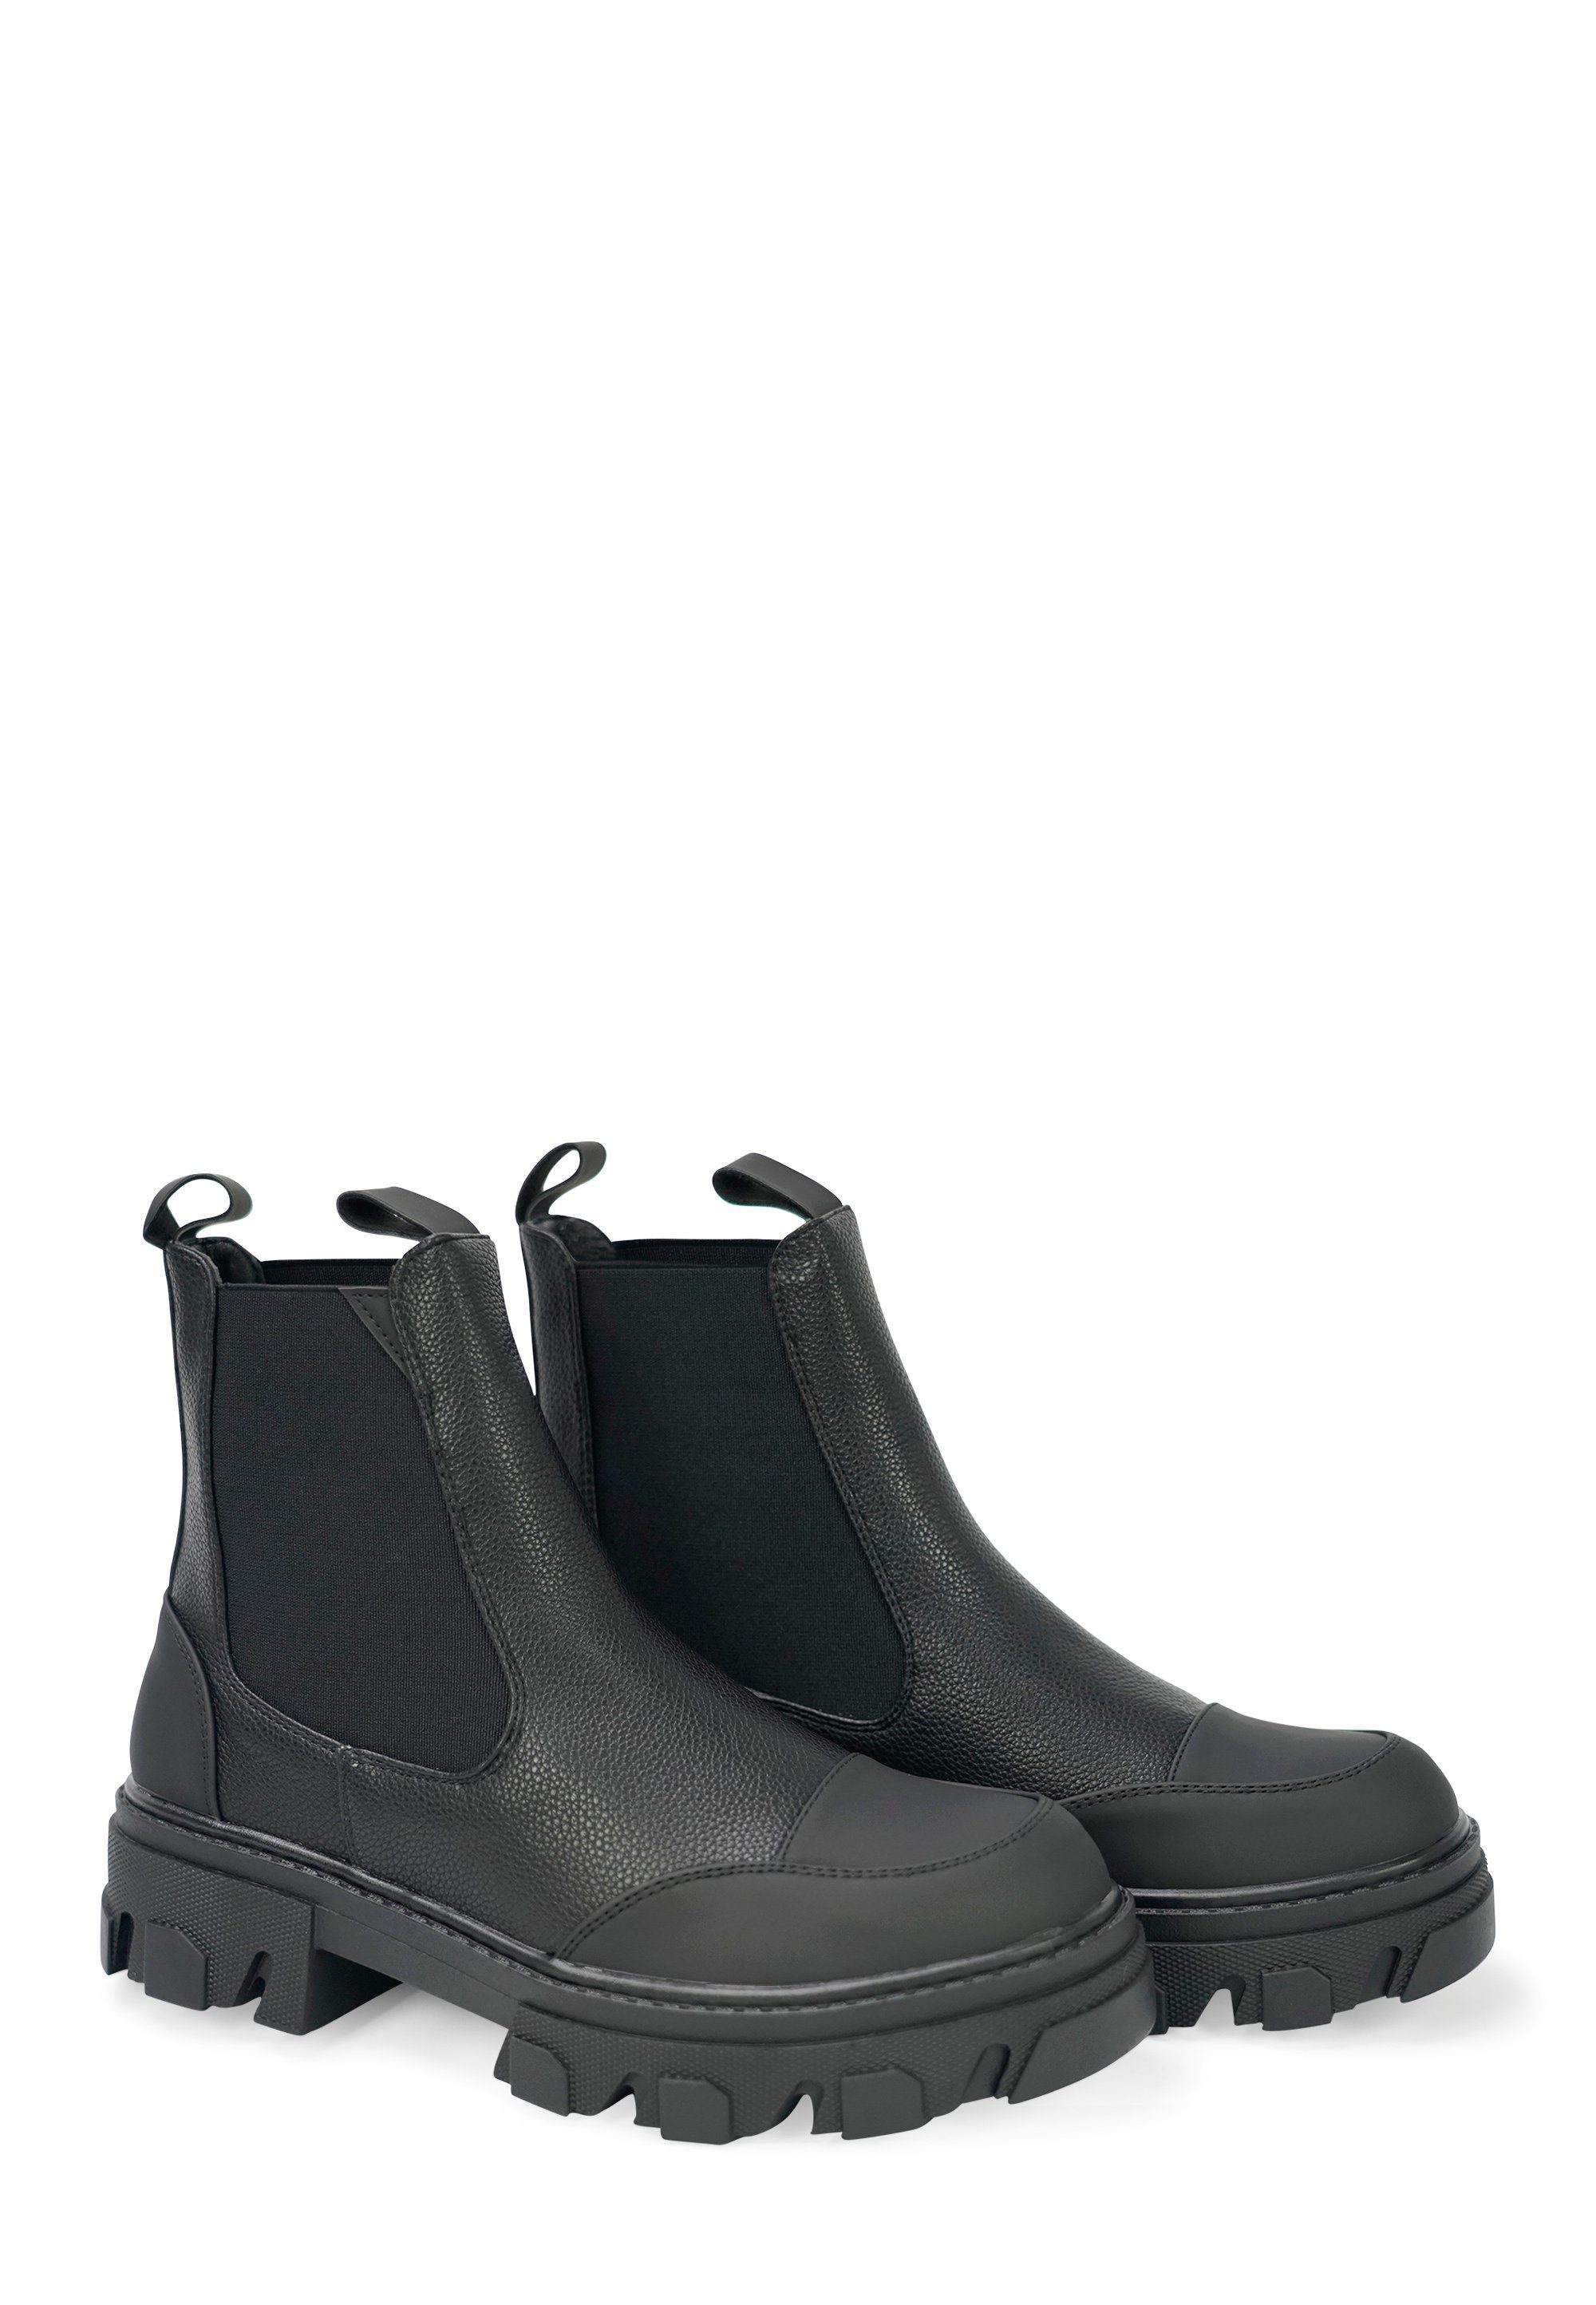 Findlay SWISS Stiefel mit Plateauabsatz, Stylishe Ankle Boots von Findlay  online kaufen | OTTO